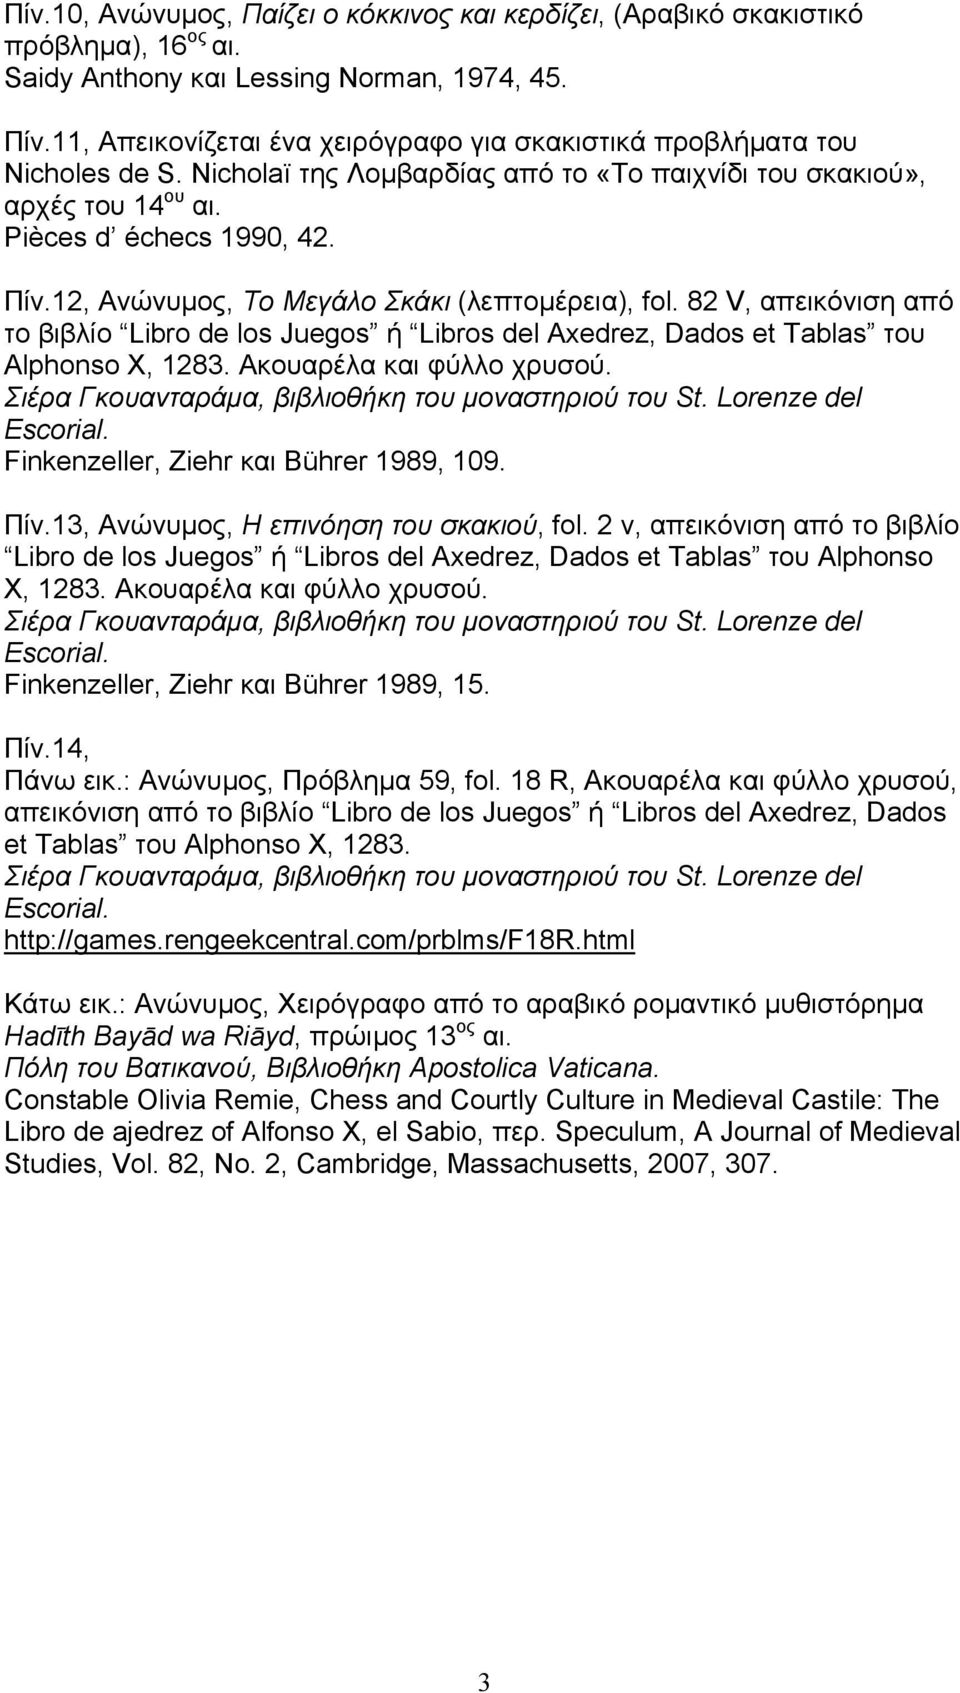 12, Ανώνυµος, Το Μεγάλο Σκάκι (λεπτοµέρεια), fol. 82 V, απεικόνιση από το βιβλίο Libro de los Juegos ή Libros del Axedrez, Dados et Tablas του Alphonso X, 1283. Ακουαρέλα και φύλλο χρυσού.